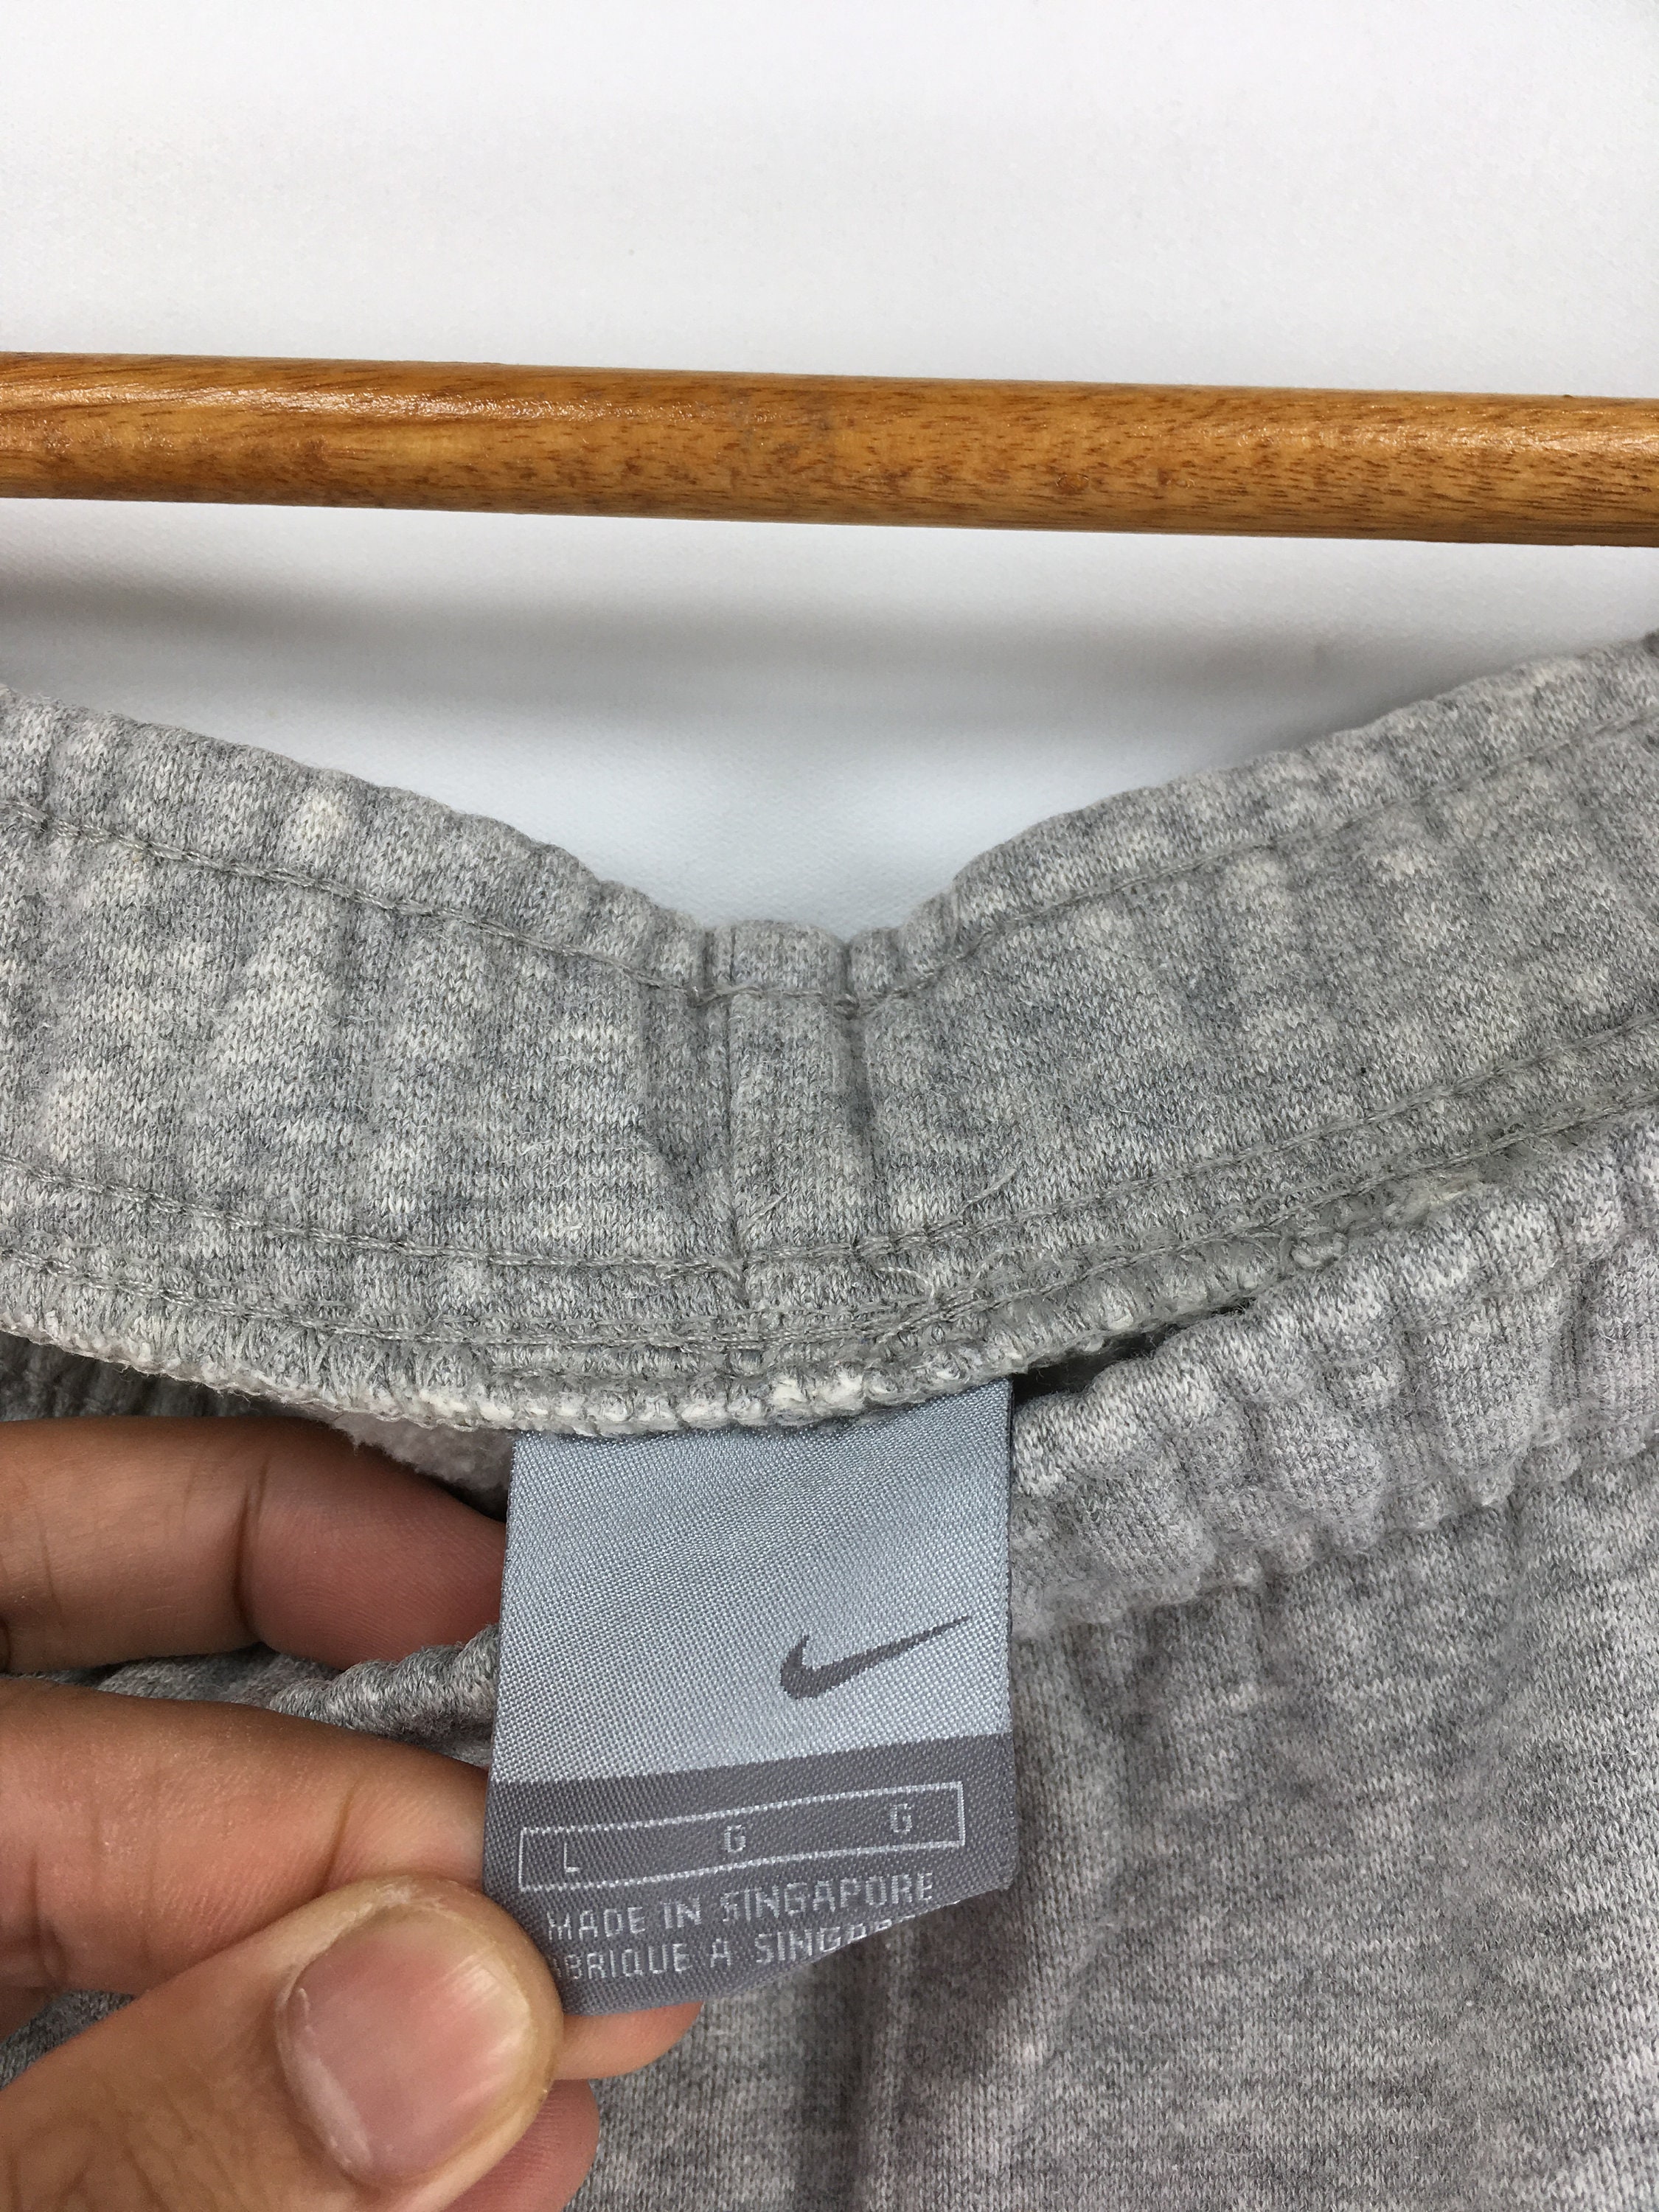 Vintage NIKE Swoosh Jogger Pants Unisex Large Nike Embroidery - Etsy